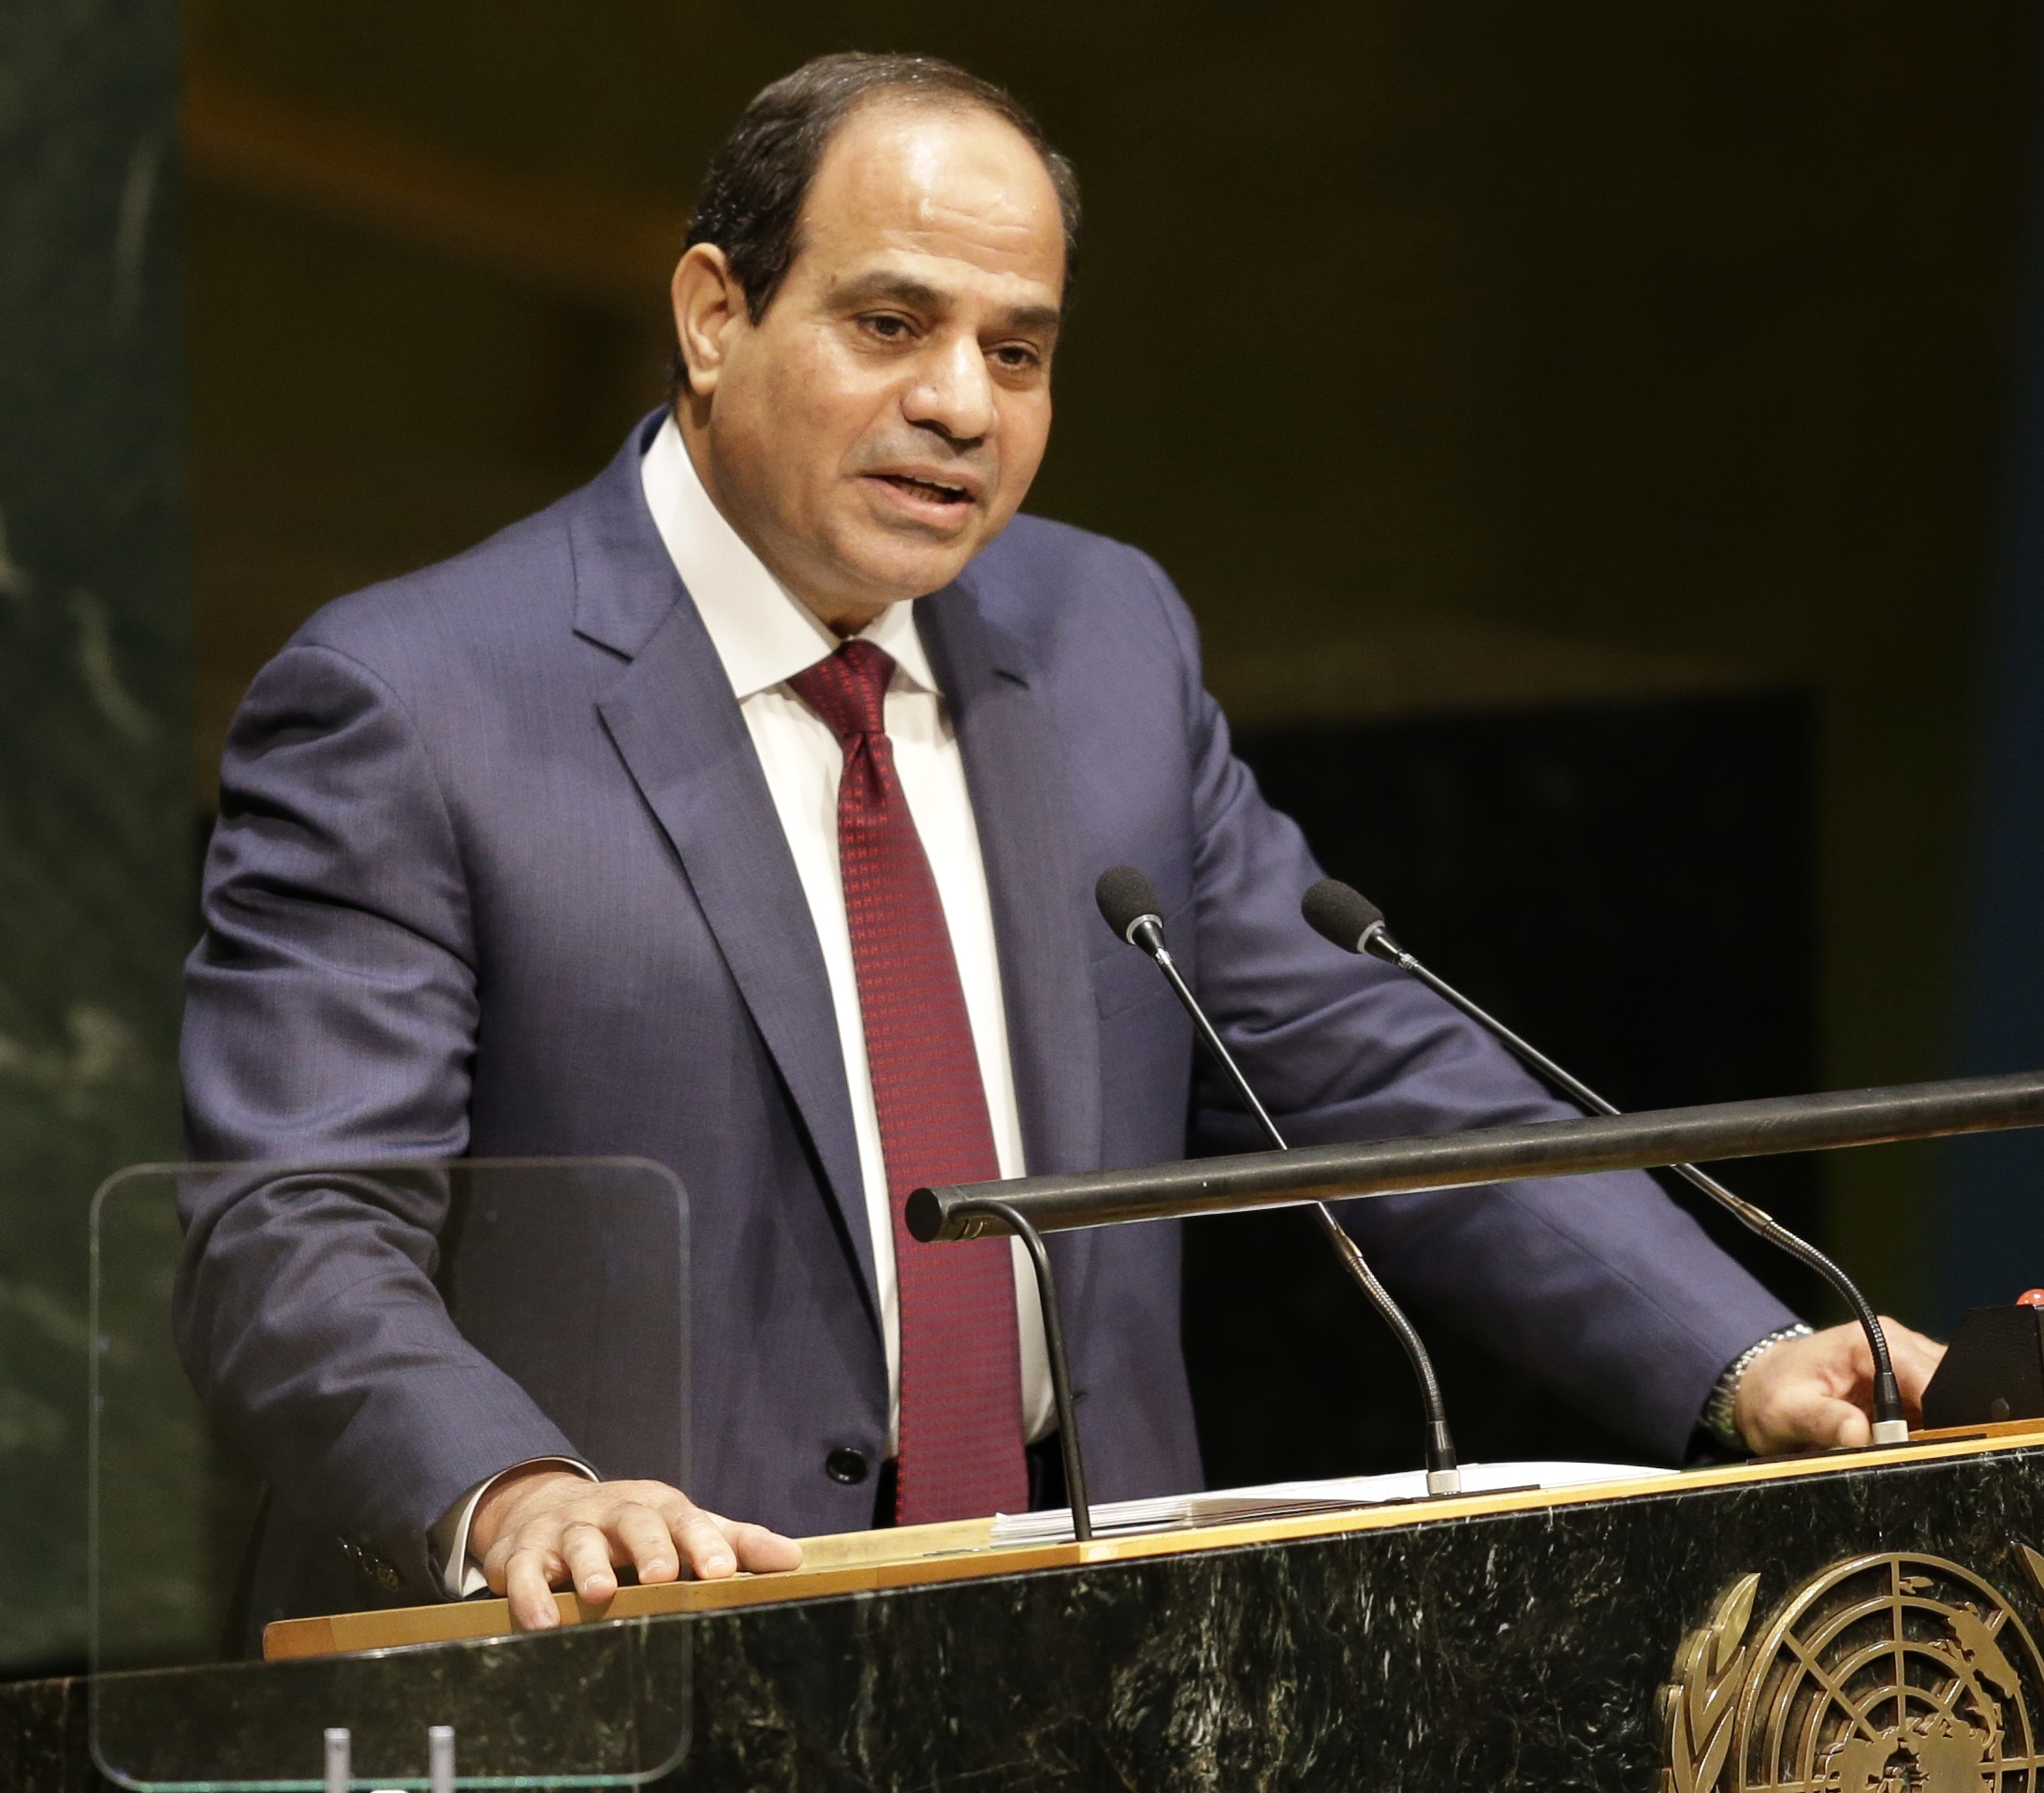 Egyptens president Abdel Fattah al-Sisiett